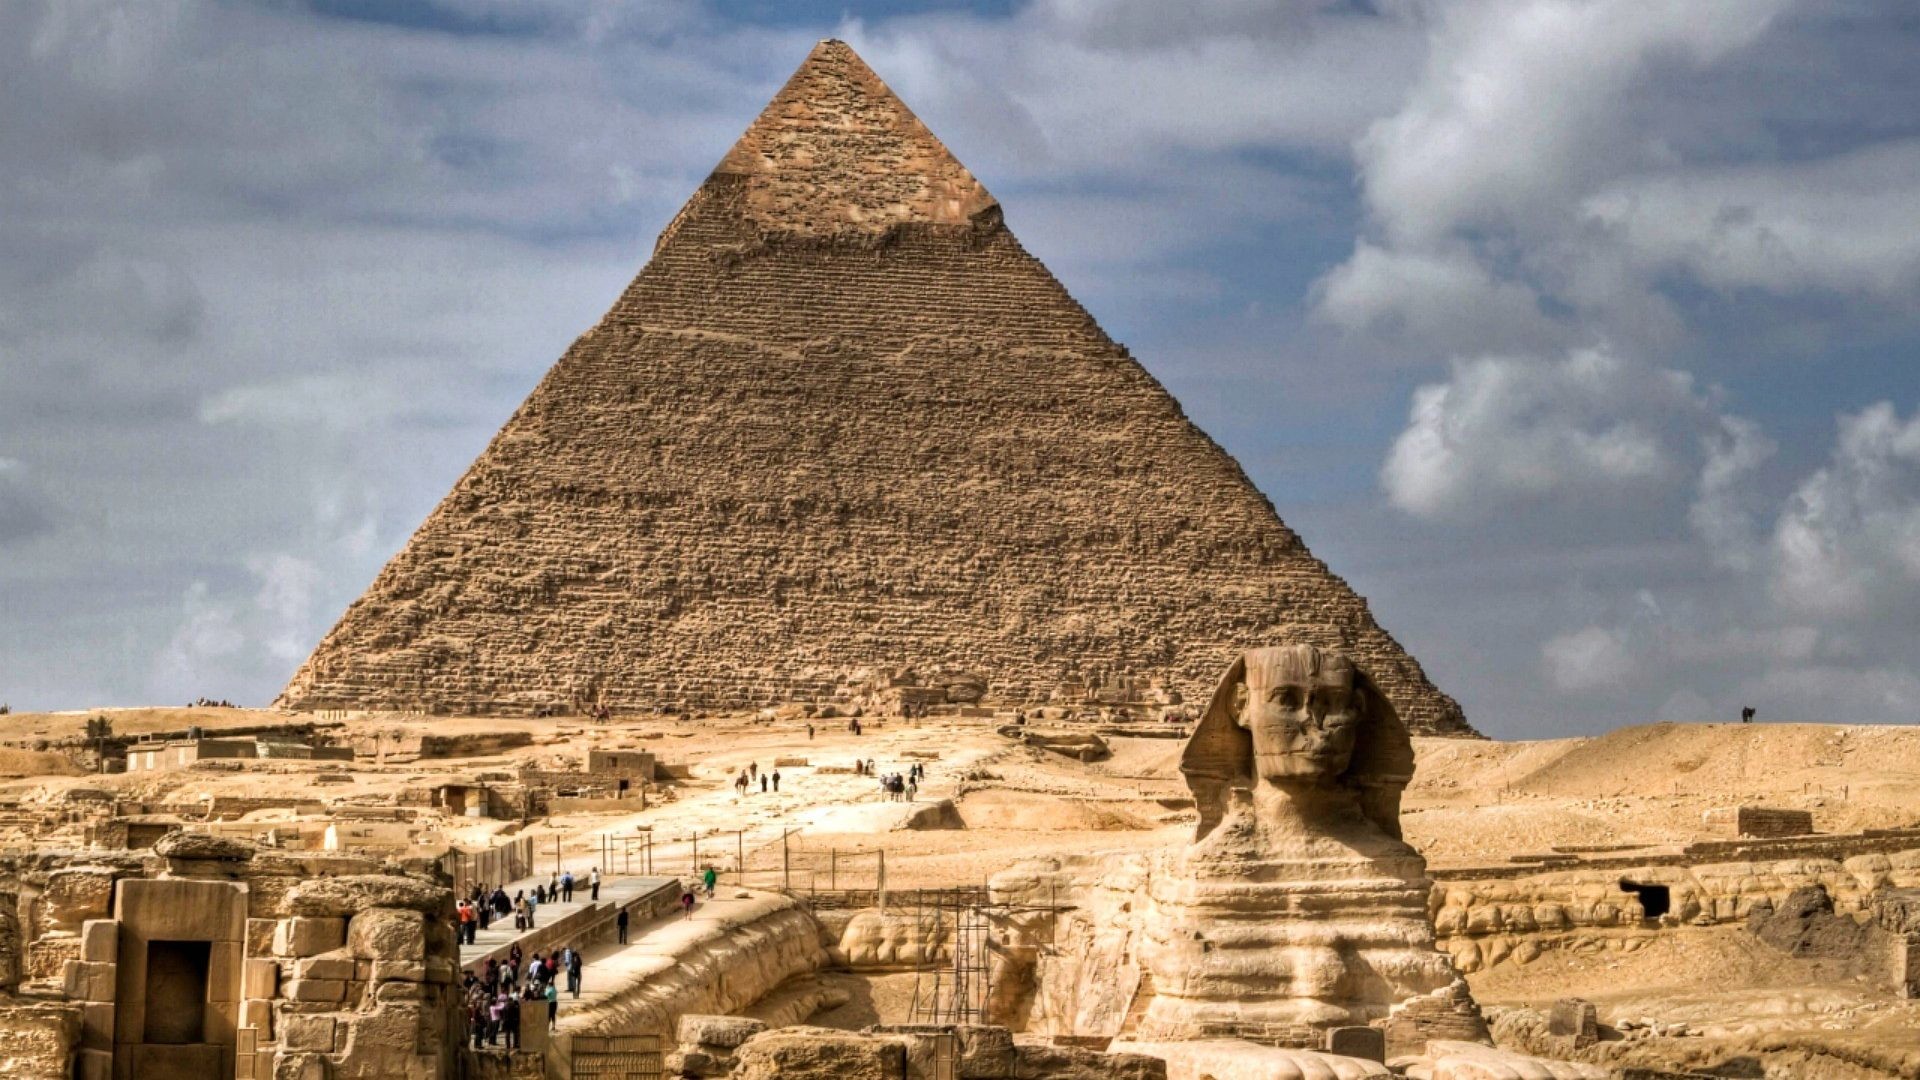 pyramiden von gizeh tapete,pyramide,alte geschichte,monument,wunder der welt,archäologische fundstätte